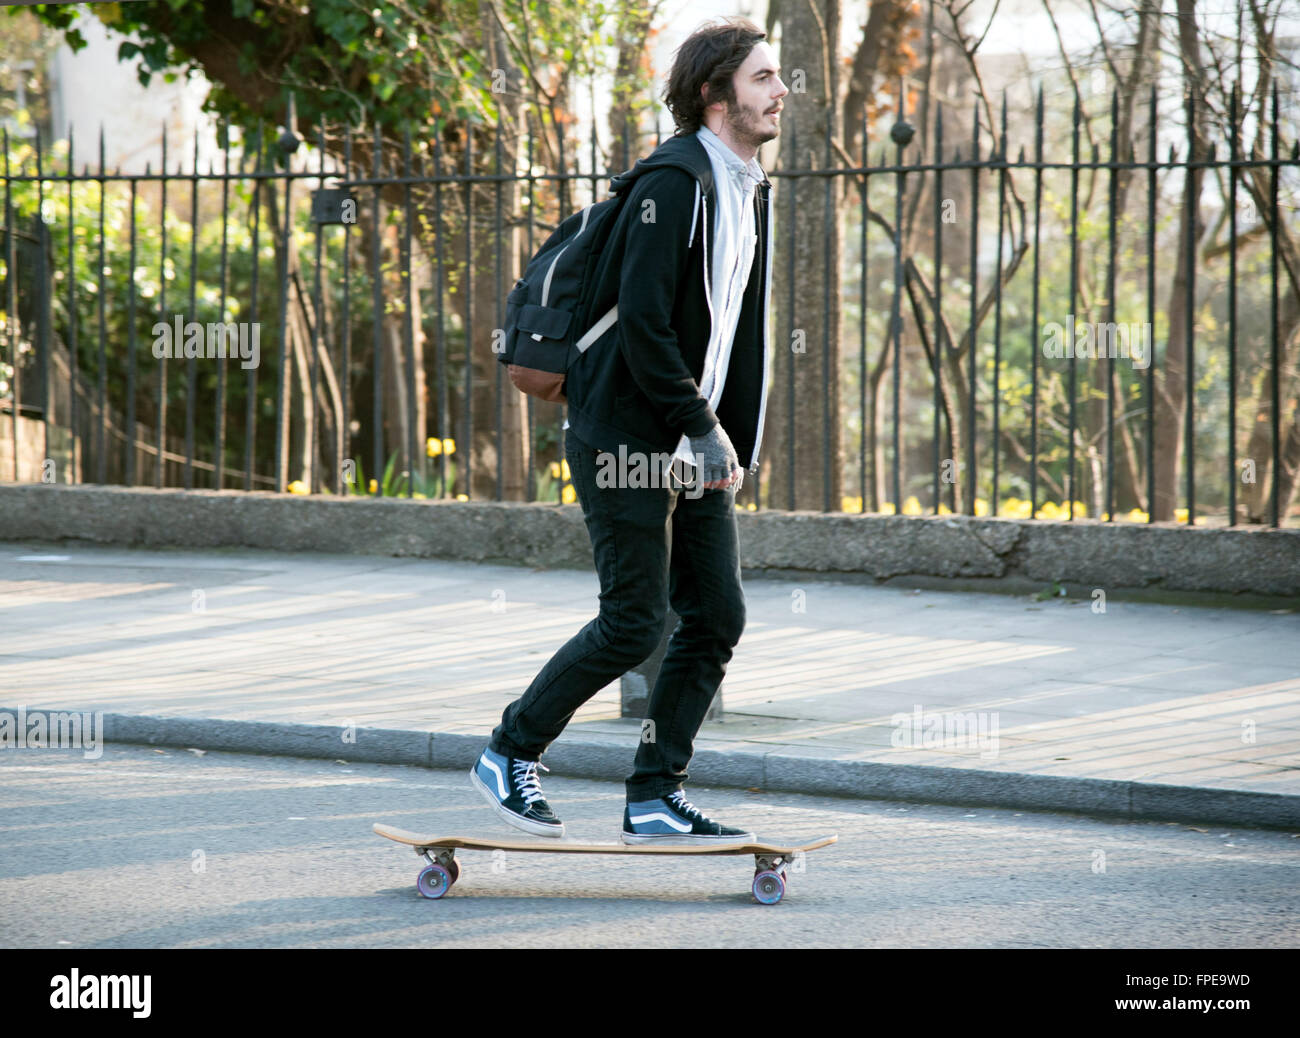 Pendler auf der Straße auf einem Skateboard skateboarding Stockfoto